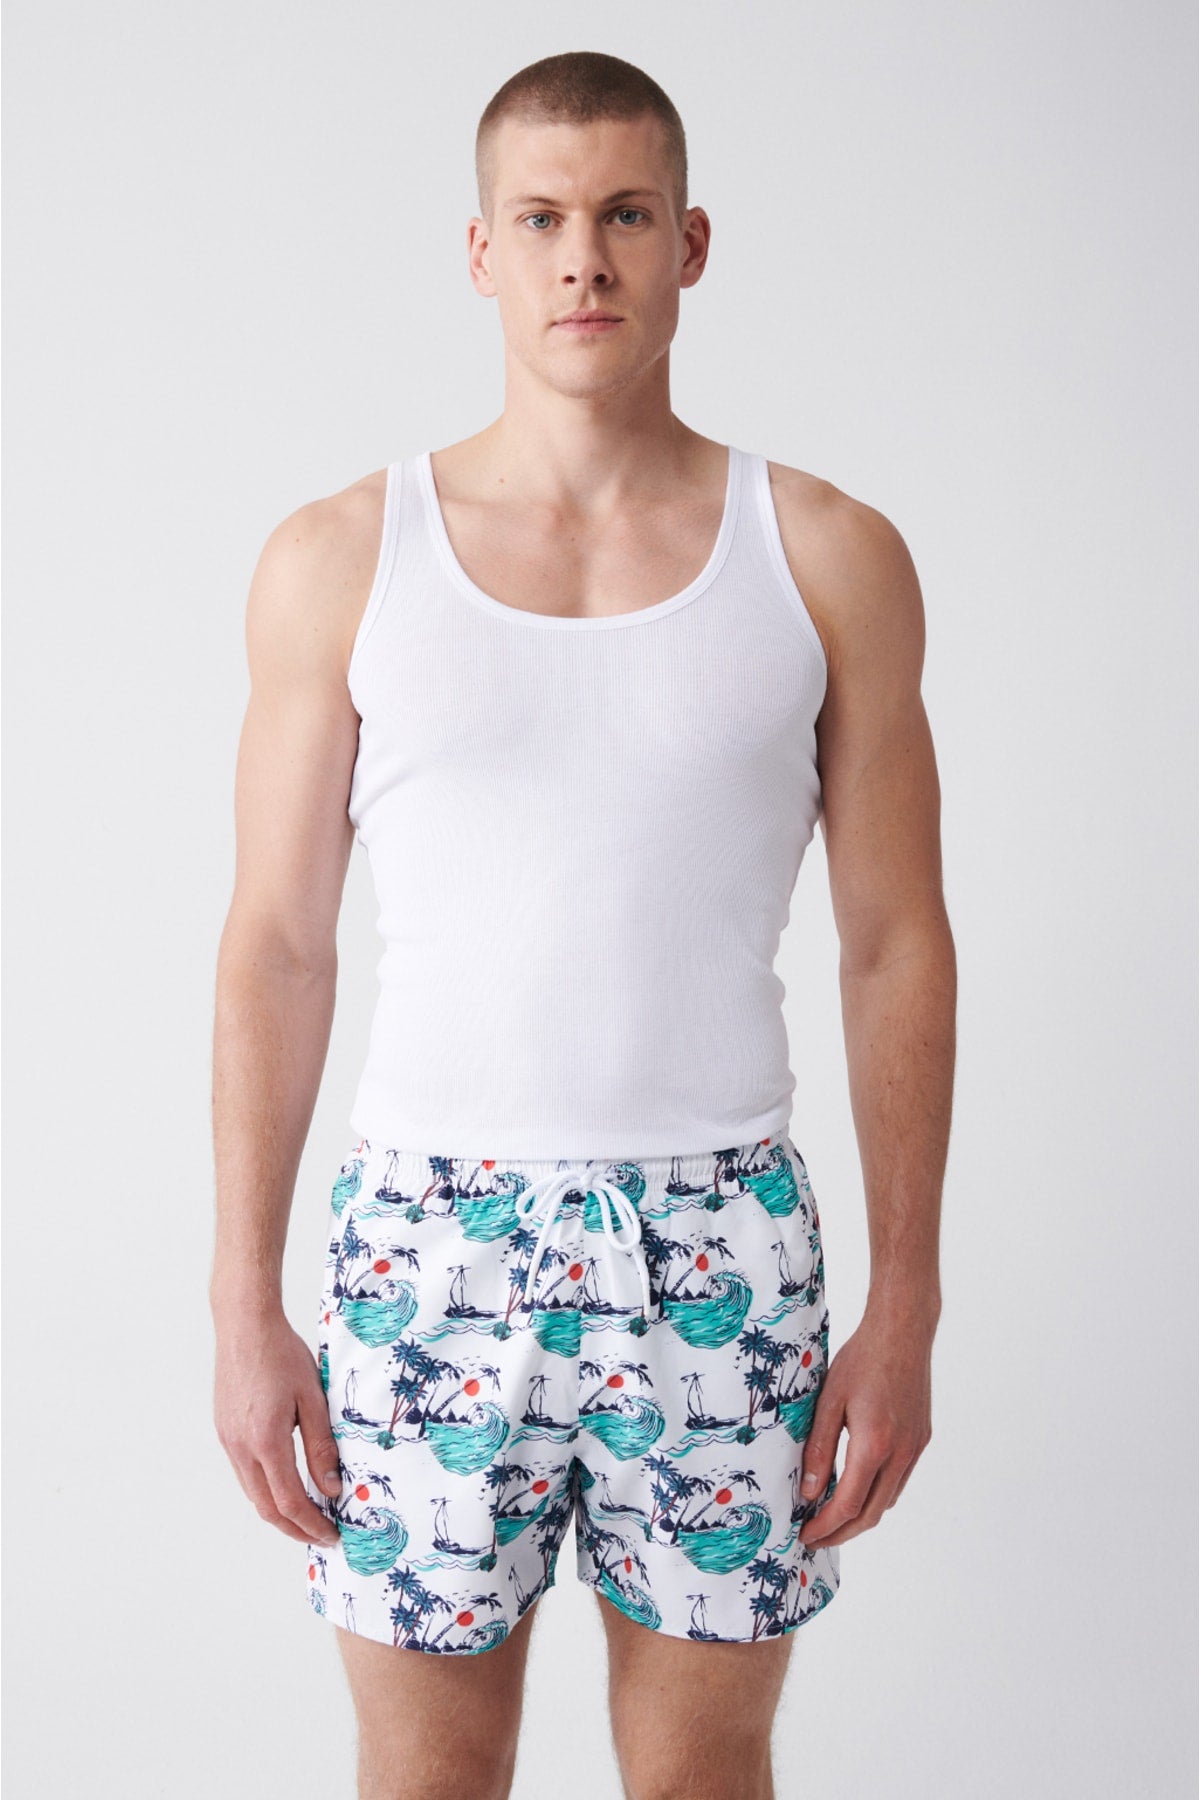 Men's Multicolour Quick Dry Printed Standard Size Swimwear Marine Shorts E003802